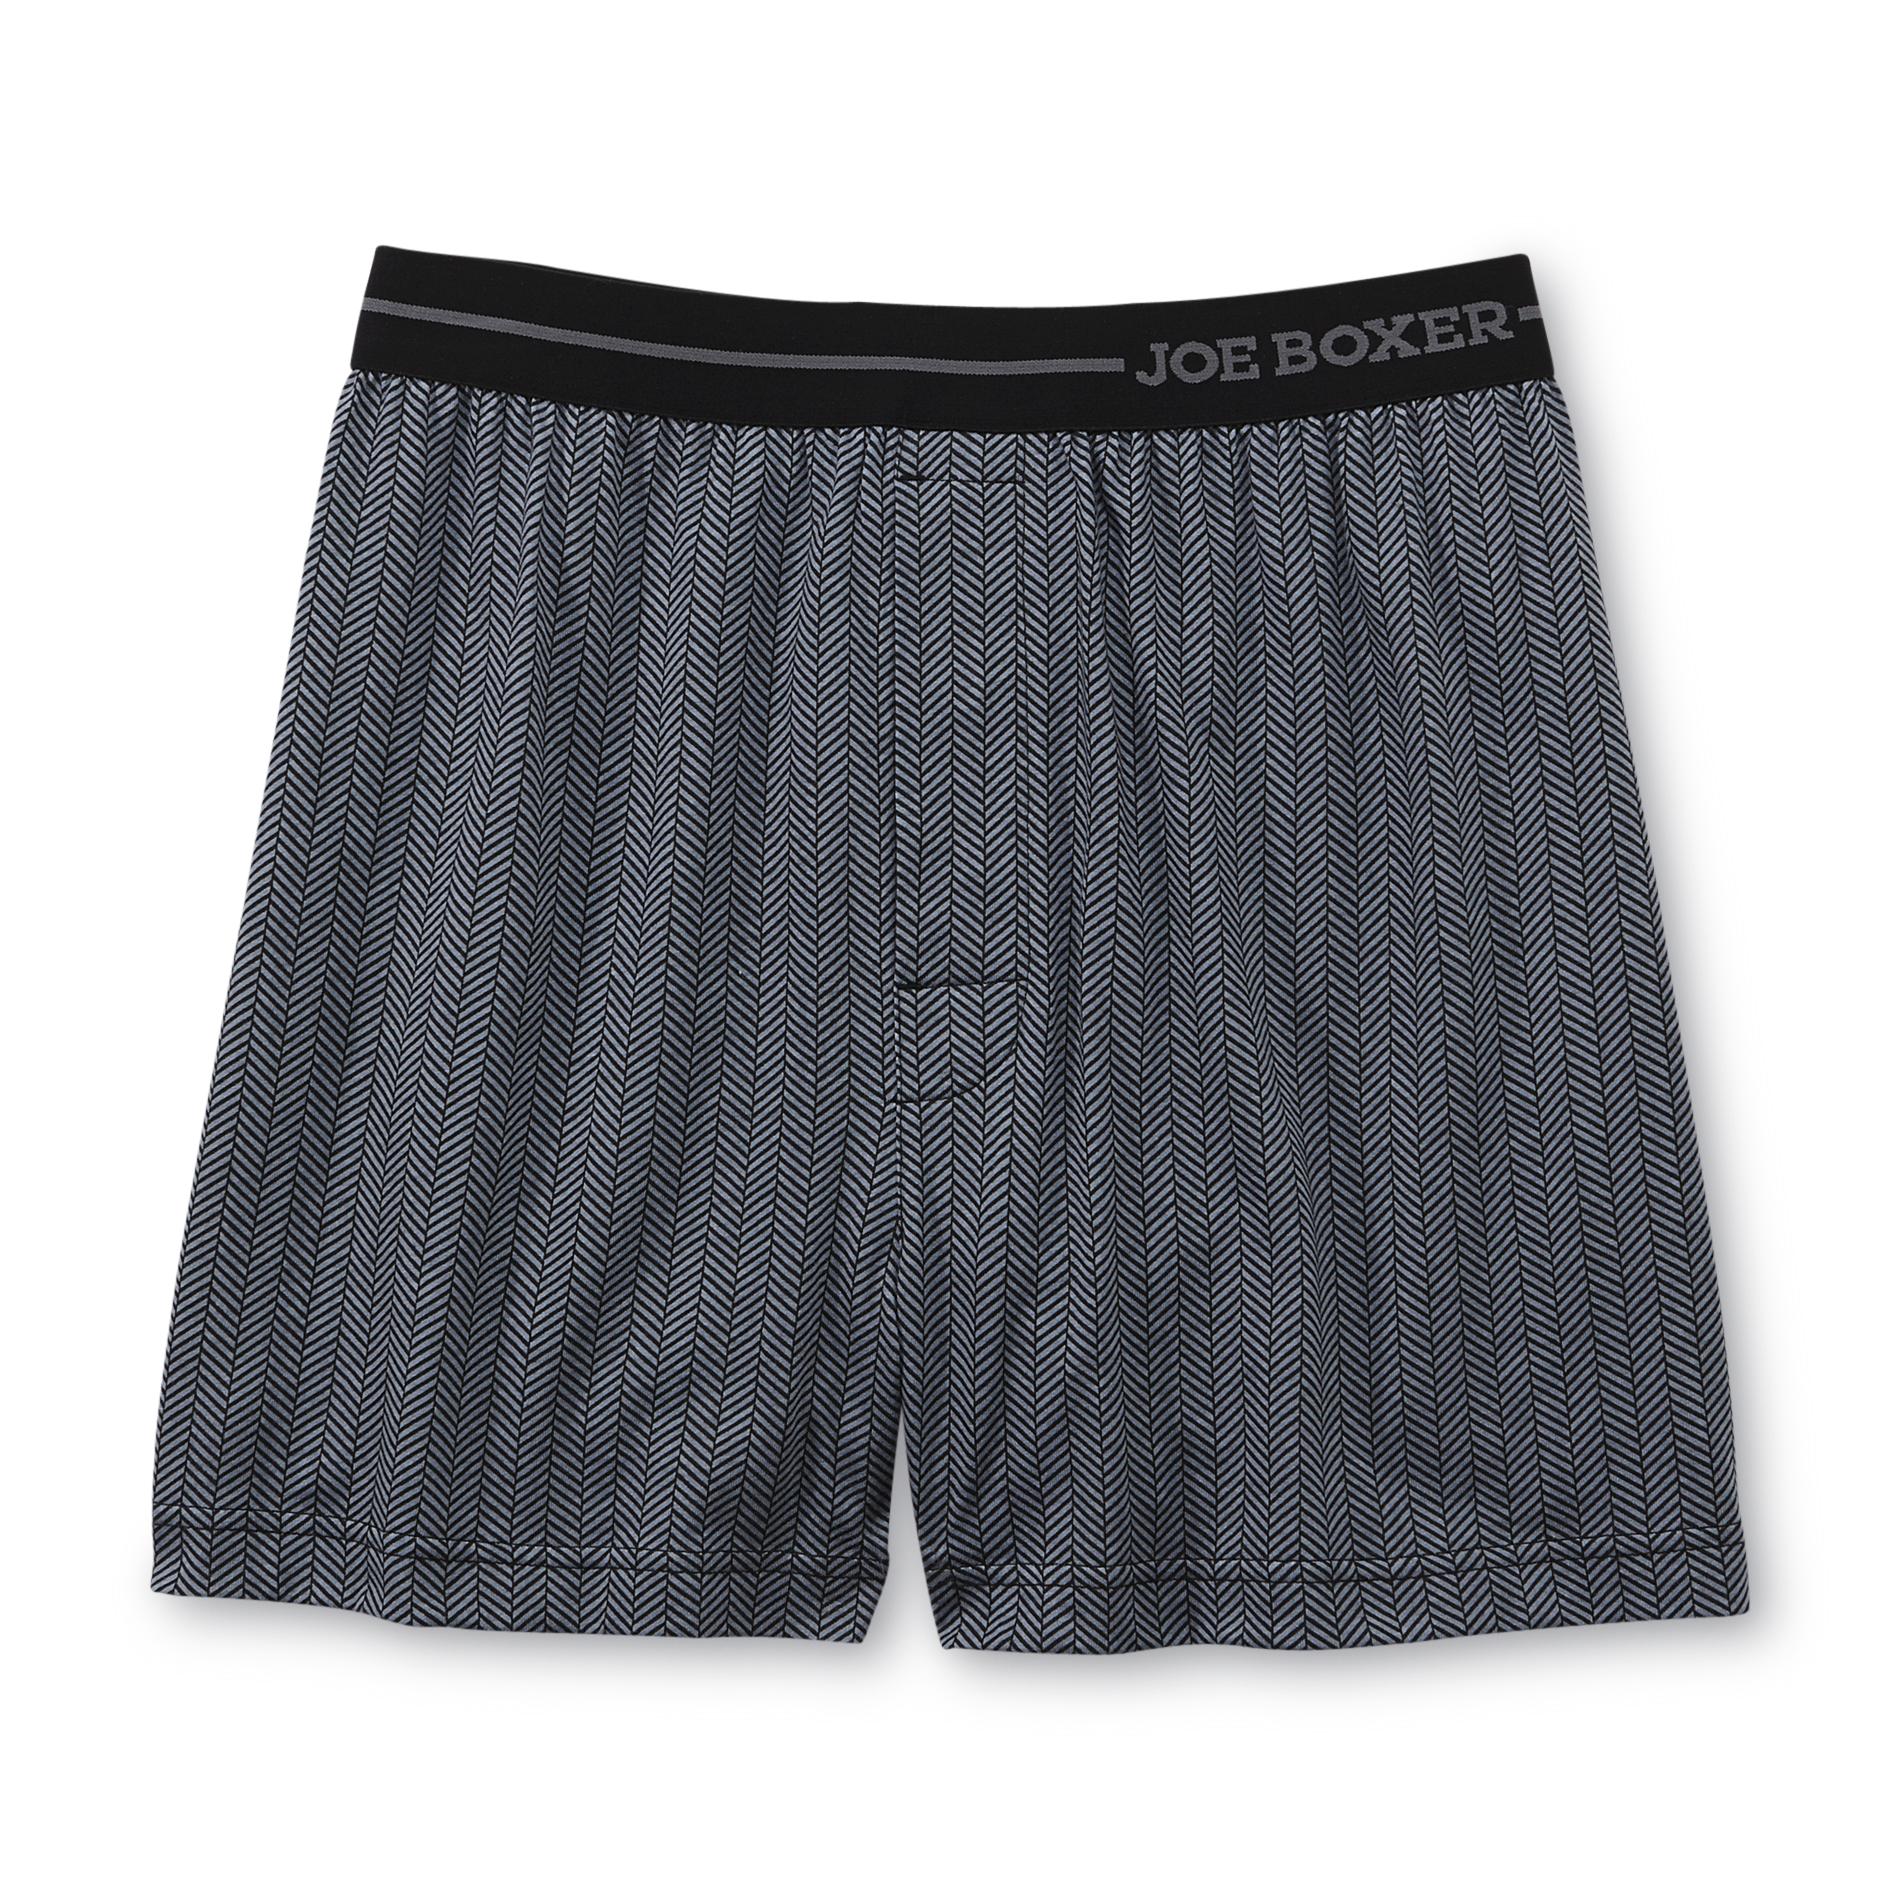 Joe Boxer Men's Knit Boxer Shorts - Herringbone